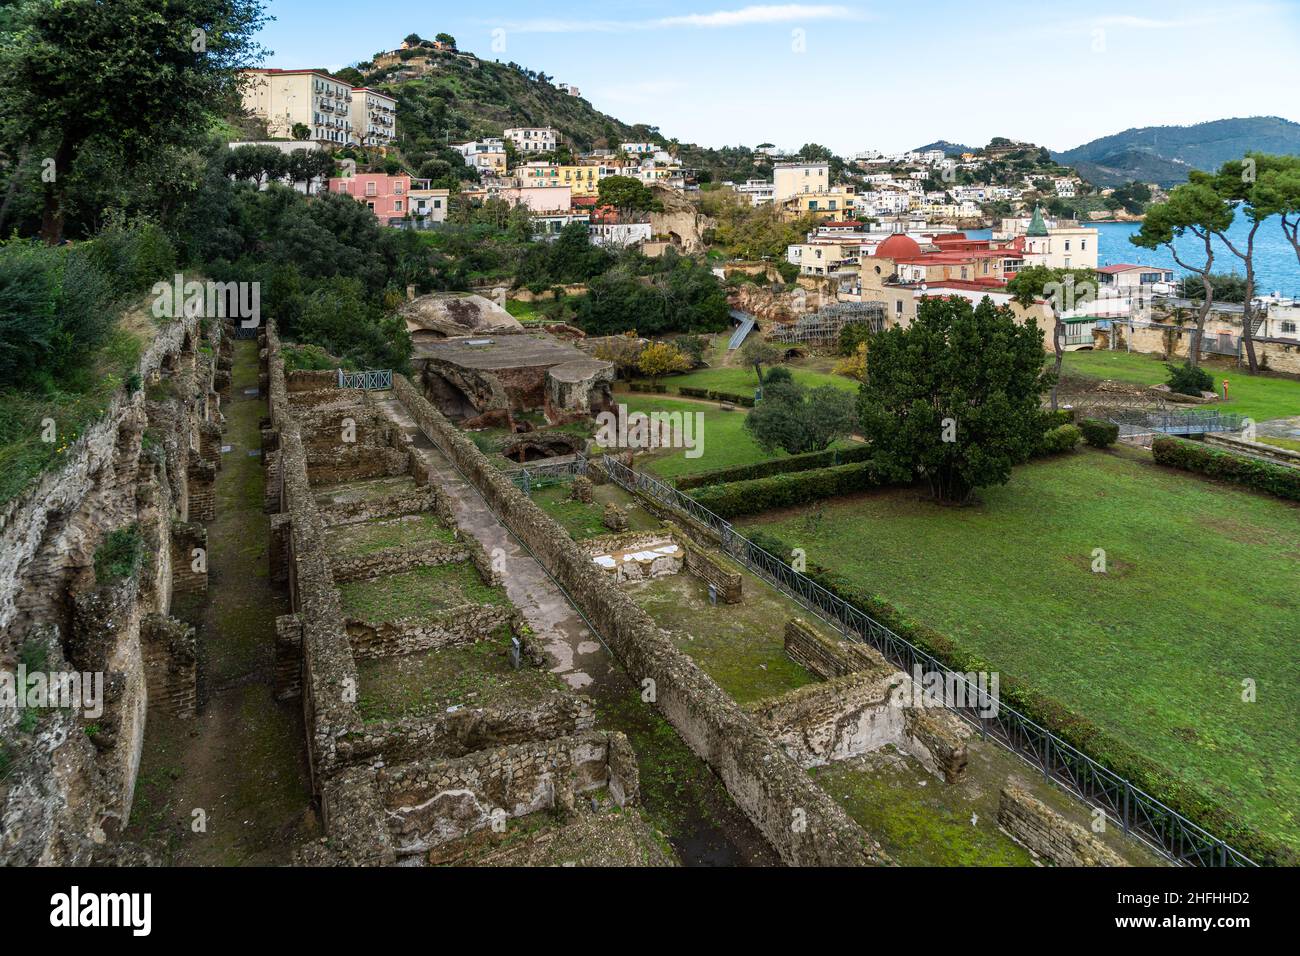 Ansicht der archäologischen Stätte Baiae in der Nähe von Neapel, Italien. Baiae war eine römische Stadt, die für ihre Thermalbäder berühmt war Stockfoto